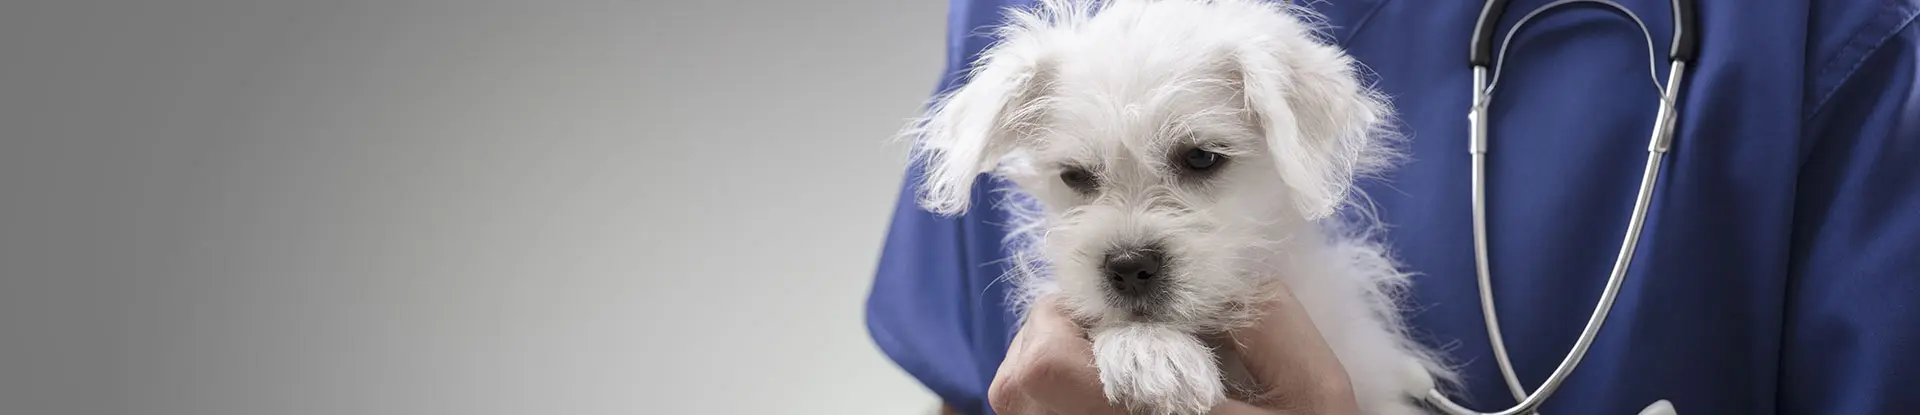 Vétérinaire libéral prenant soin d'un chien - La Communauté MACSF